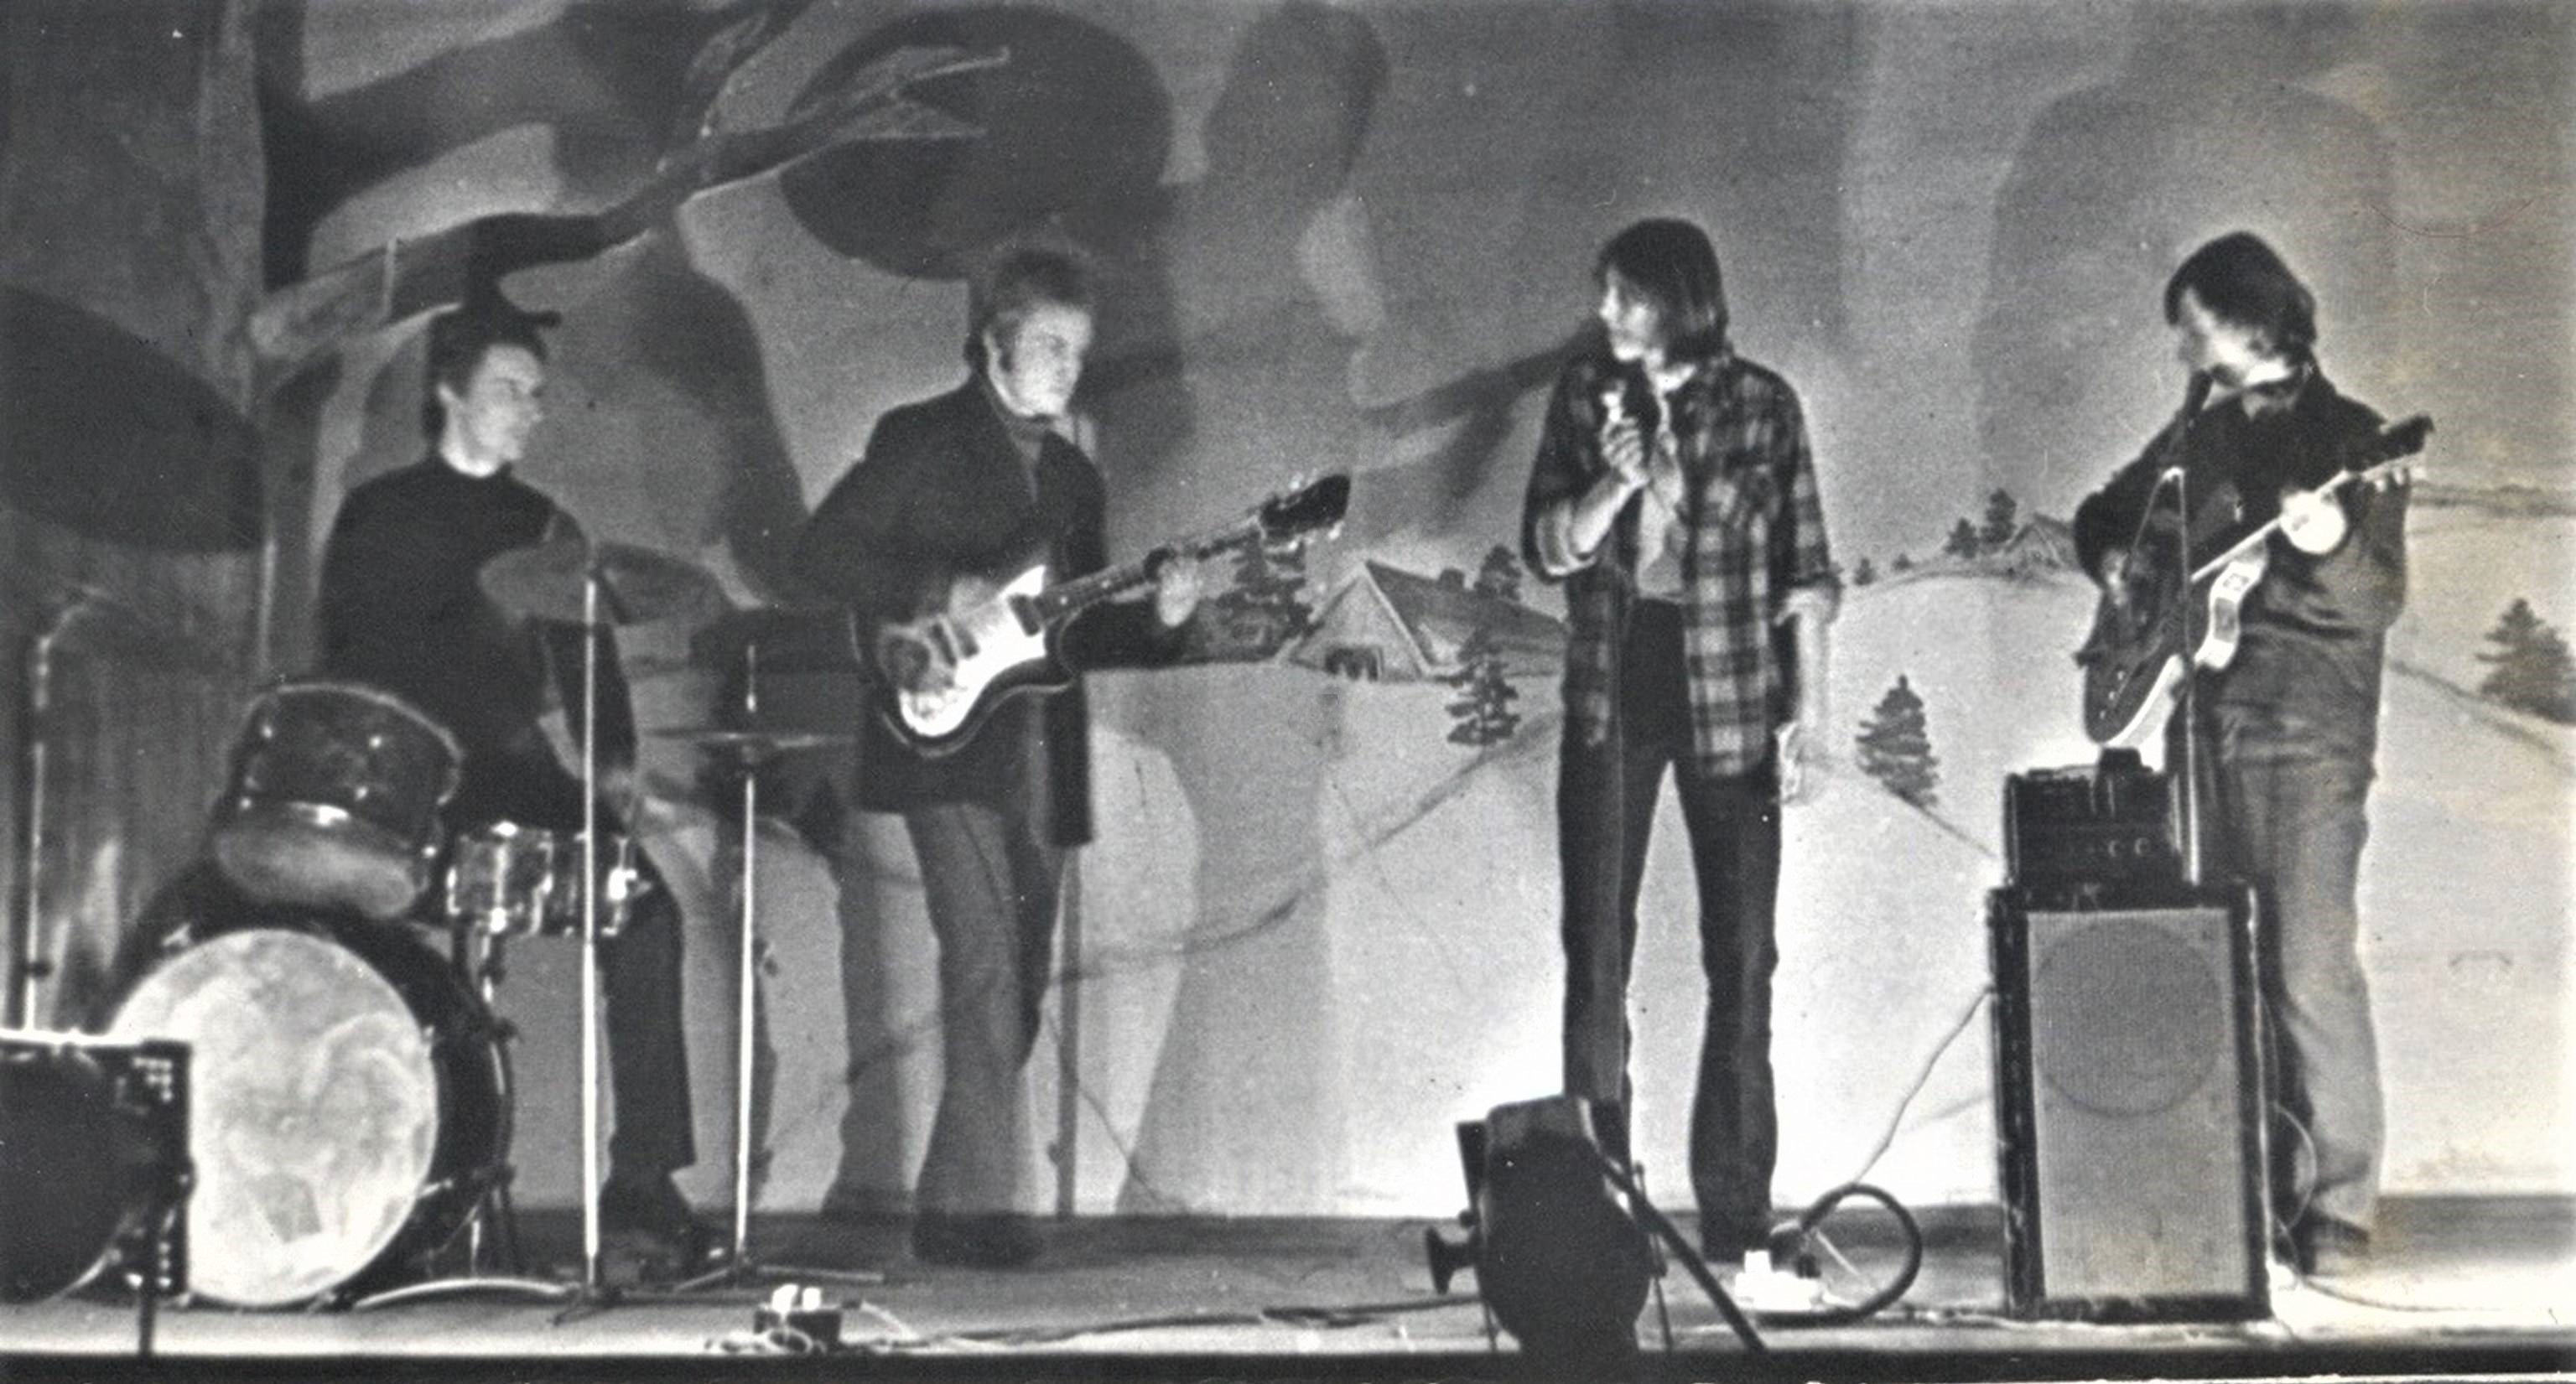 Kauno šokių klube „Kaspinas“ muzikuojantys (iš dešinės) Genadijus Slavinskas (su gitara) ir Aleksandras Jegorovas-Džyza (prie mikrofono). 1970 m. prie Lietuvos SSR Ministrų Tarybos Kauno m. skyriaus 1971 m. sausio mėn. specialiame pranešime pažymėta, kad  G. Slavinskas ‒ vienos „hipiais save vadinančių“ jaunuolių grupuotės lyderis, priešiškai nusiteikęs „egzistuojančios santvarkos atžvilgiu“. Dokumente minimas ir A. Jegorovas.  Amžininkų tvirtinimu, G. Slavinskas puikiai grojo gitara, buvo gerai įvaldęs klasikinį rokenrolą. Silvijos Kurienės asmeninis archyvas.